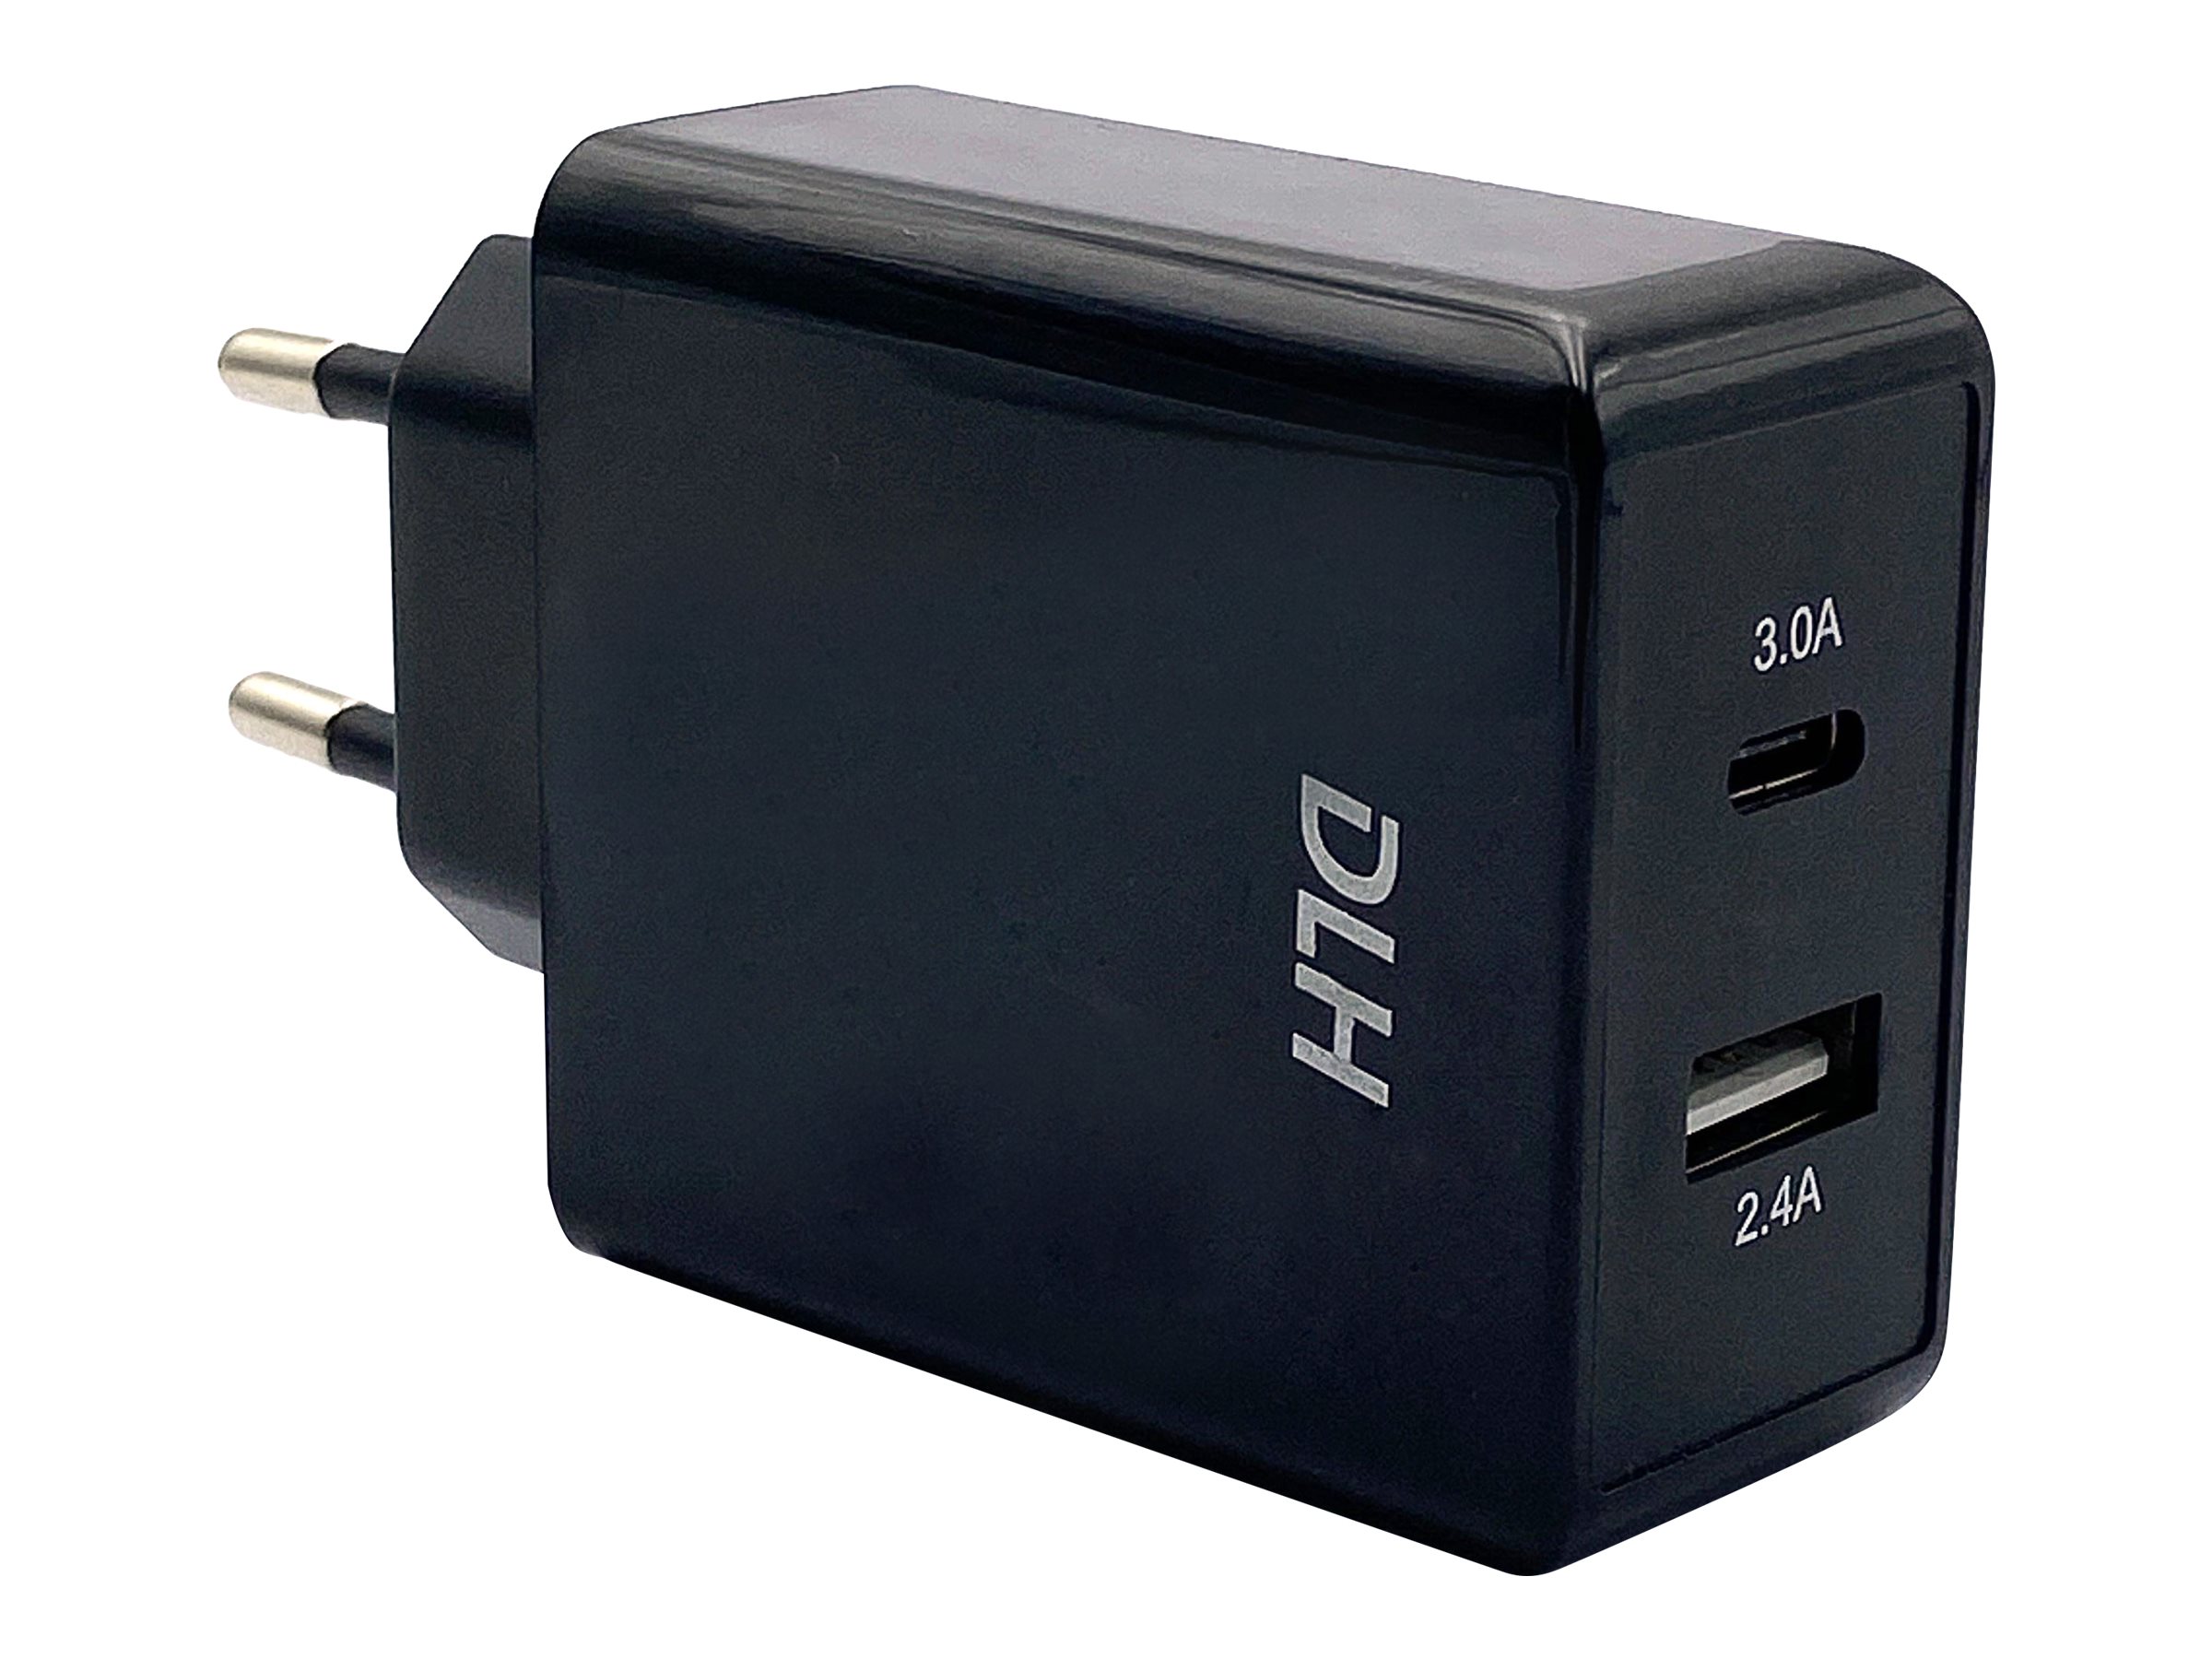 DLH DY-AU2640B - Adaptateur secteur - 24 Watt - 4.8 A - 2 connecteurs de sortie (USB, 24 pin USB-C) - noir - DY-AU2640B - Batteries et adaptateurs d'alimentation pour téléphone cellulaire